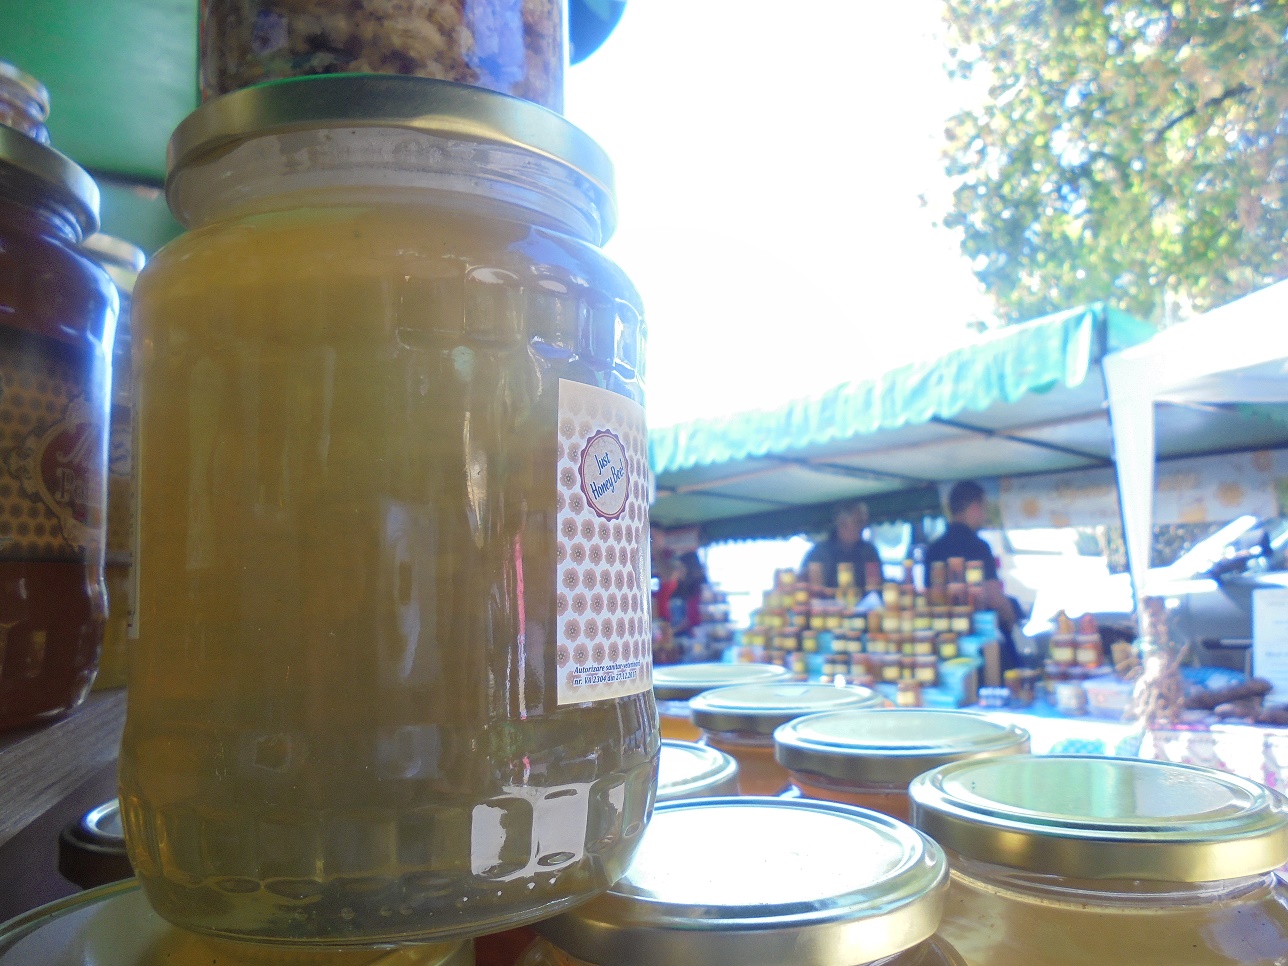 Apicultorii români etalează proprietățile terapeutice ale mierii, ca să reușească să o vândă en detail, la târguri; unii dintre ei hrănesc însă albinele cu siropuri produse industrial